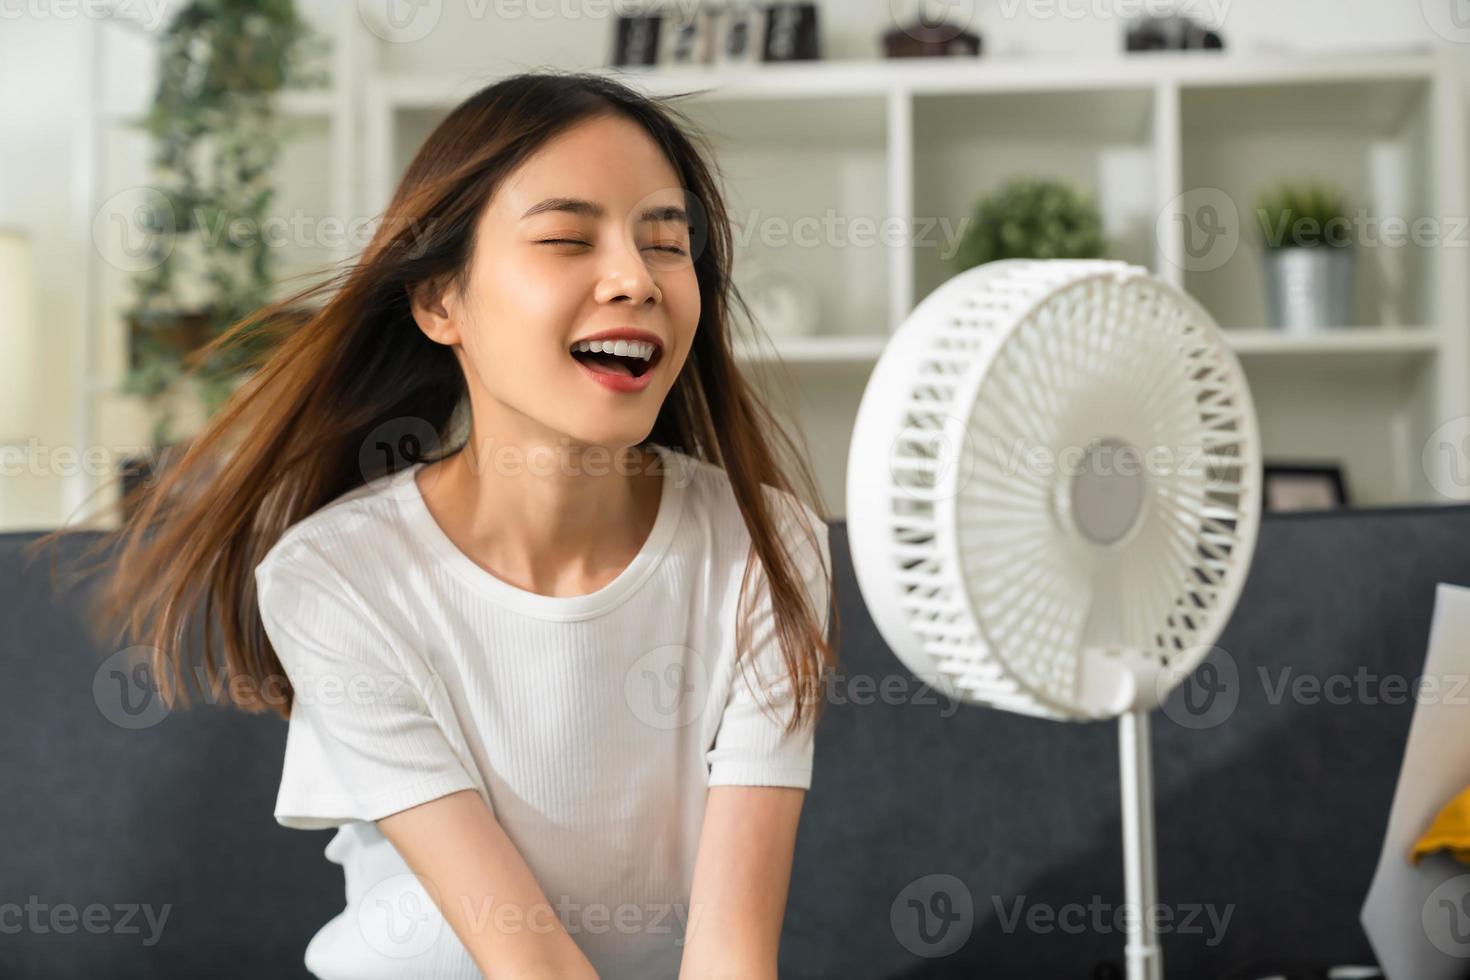 jovem mulher asiática sorridente sentada no sofá e ligado o ventilador para se refrescar com sofre de tempo muito quente na sala de estar. foto